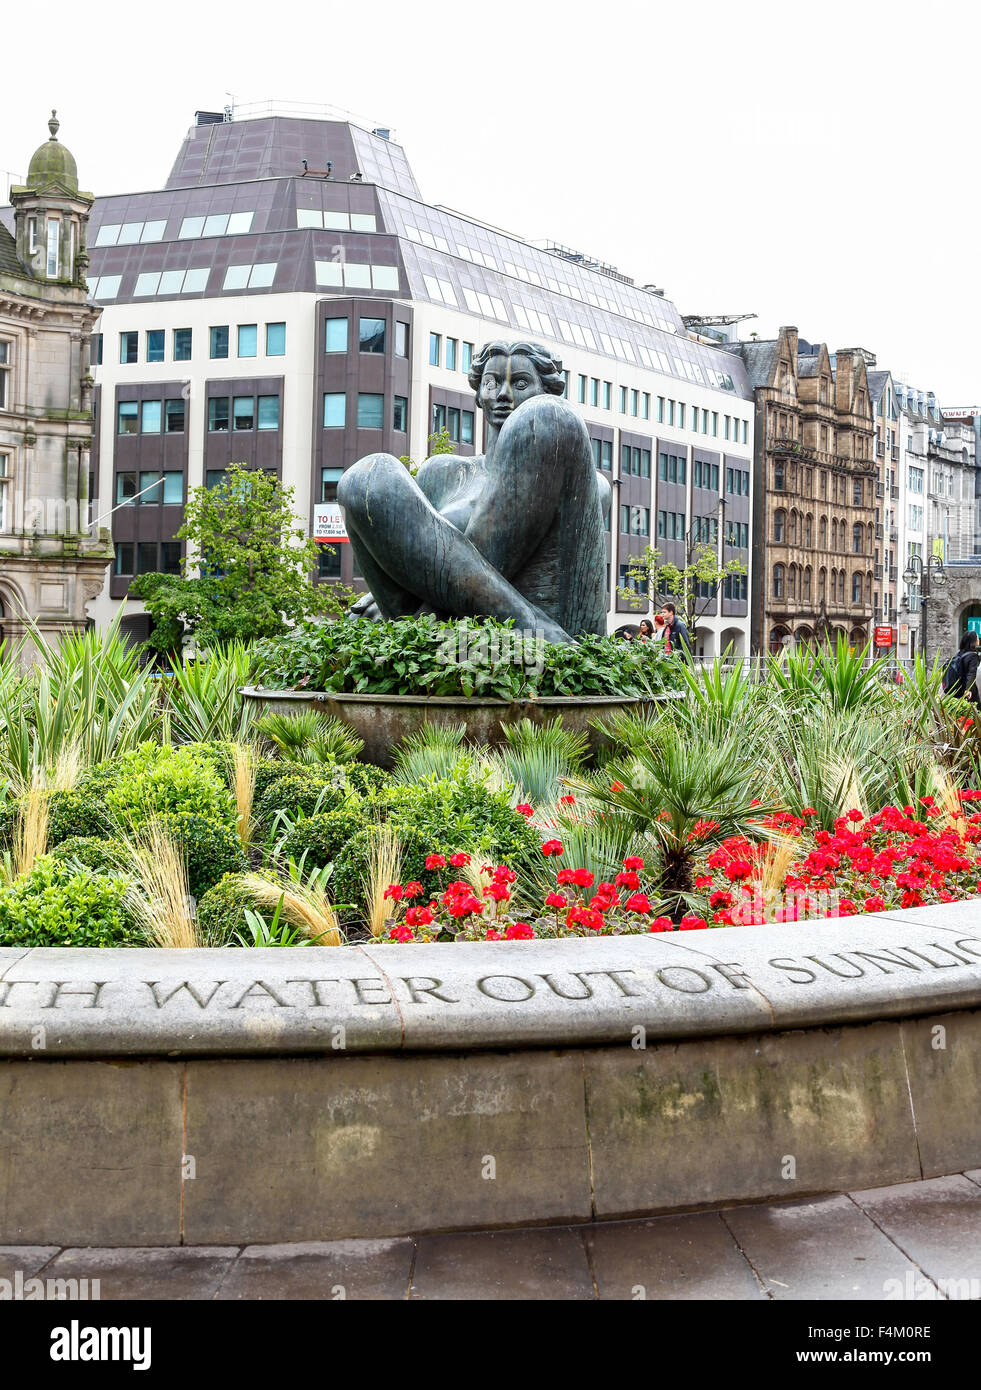 Den Fluss oder die Flittchens im Whirlpool ist ein Kunstwerk in Victoria Square Birmingham West Midlands England UK Stockfoto